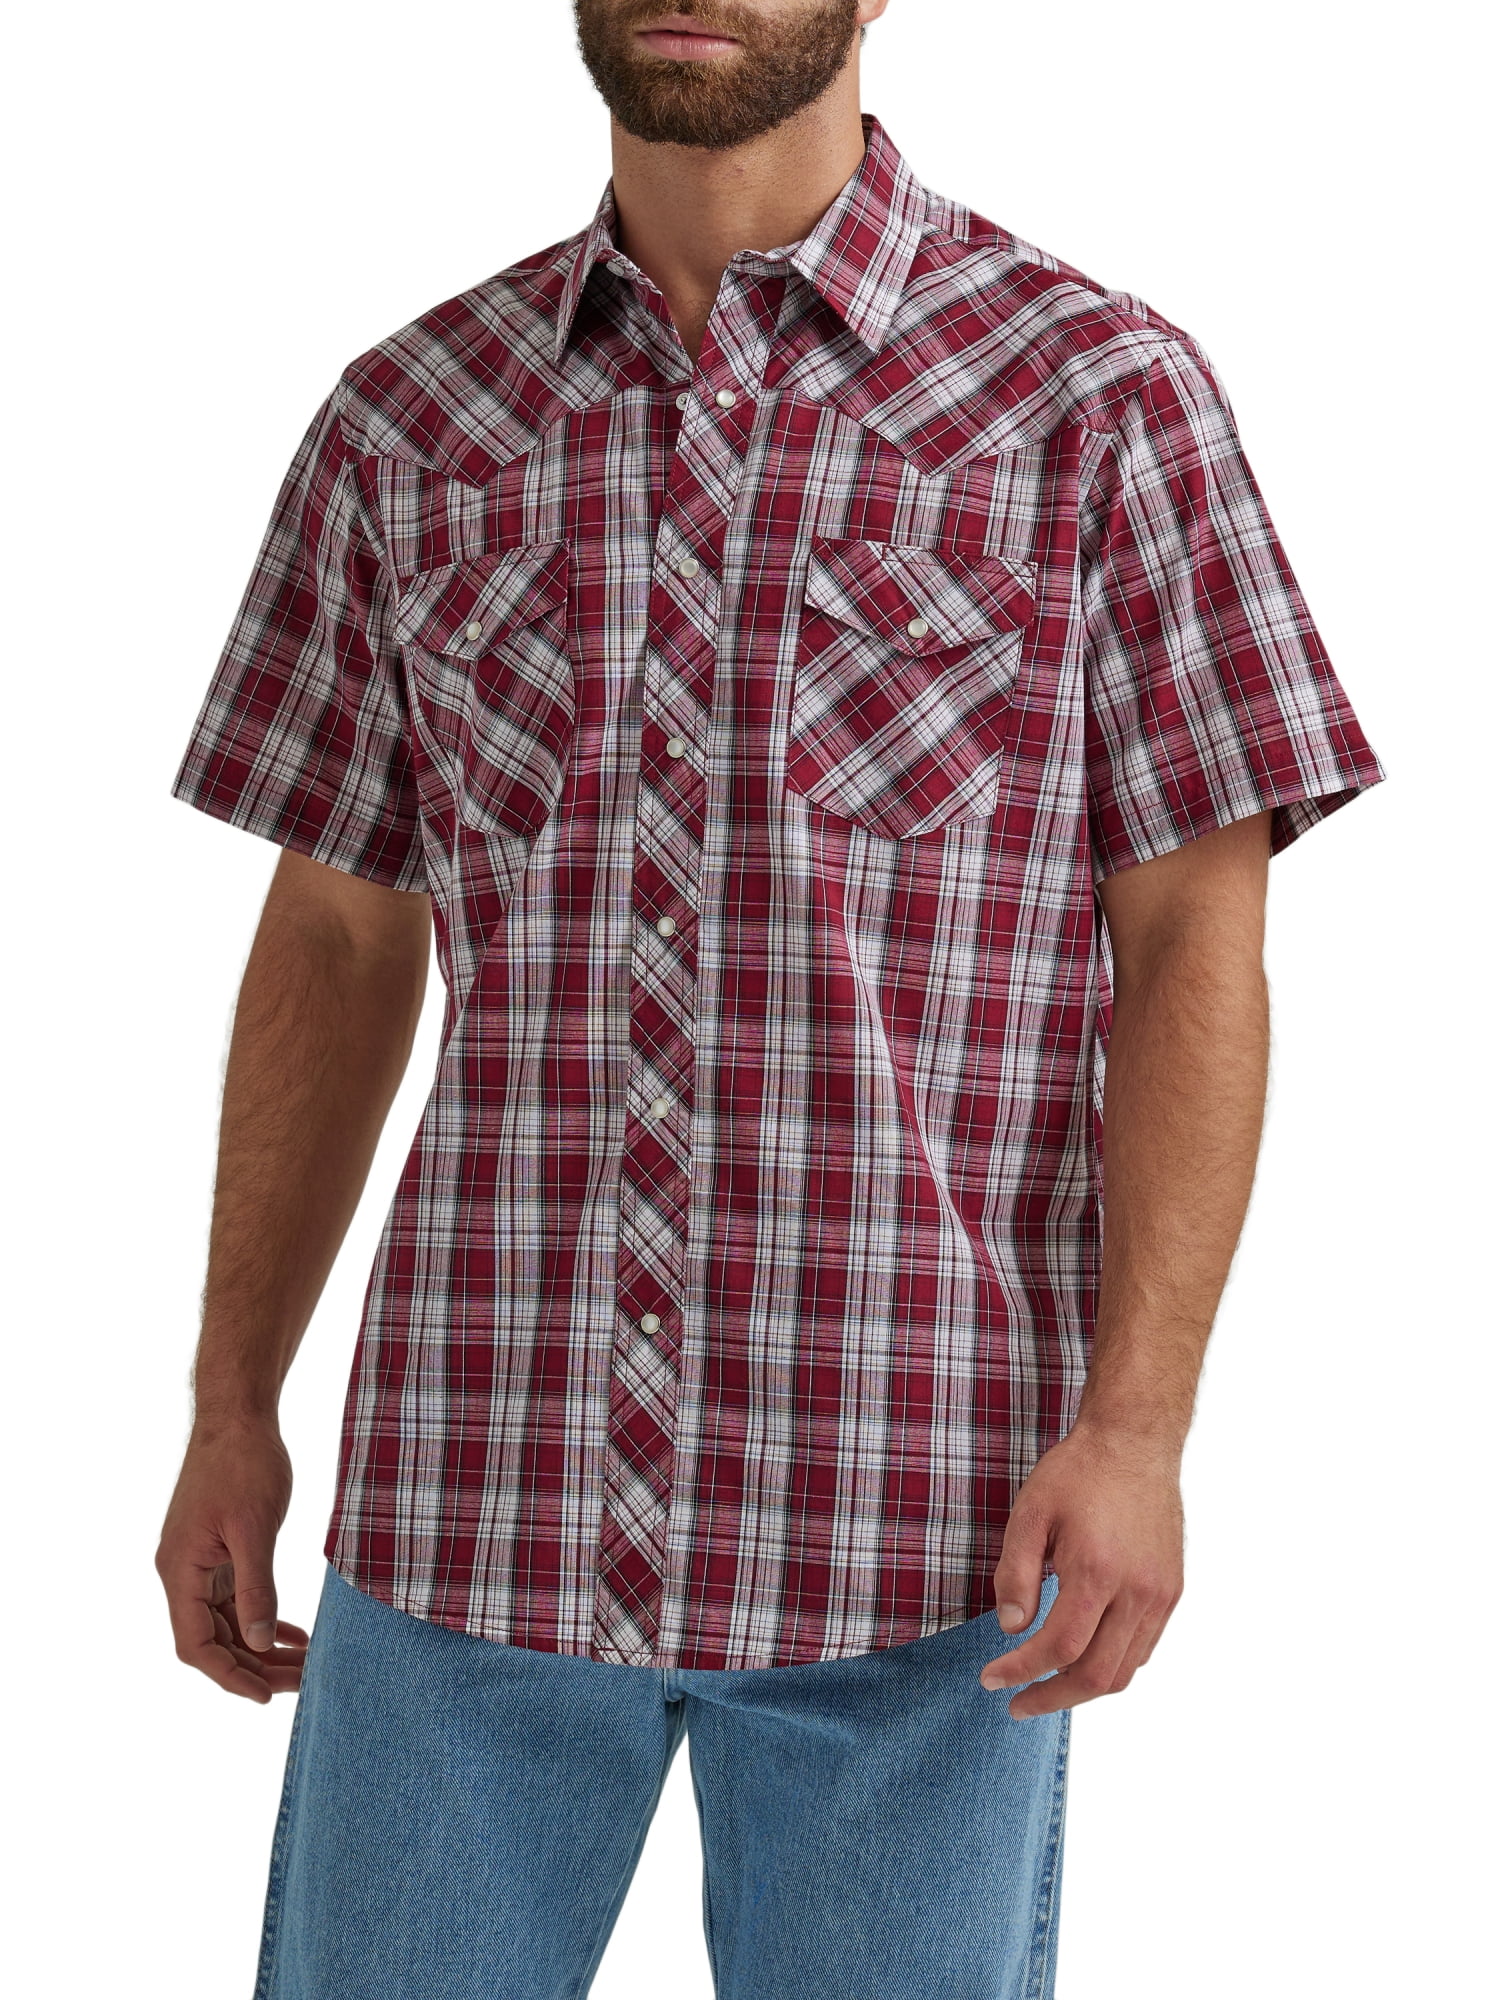 Wrangler Men's Short Sleeve Western Shirt, Size S-5XL - Walmart.com